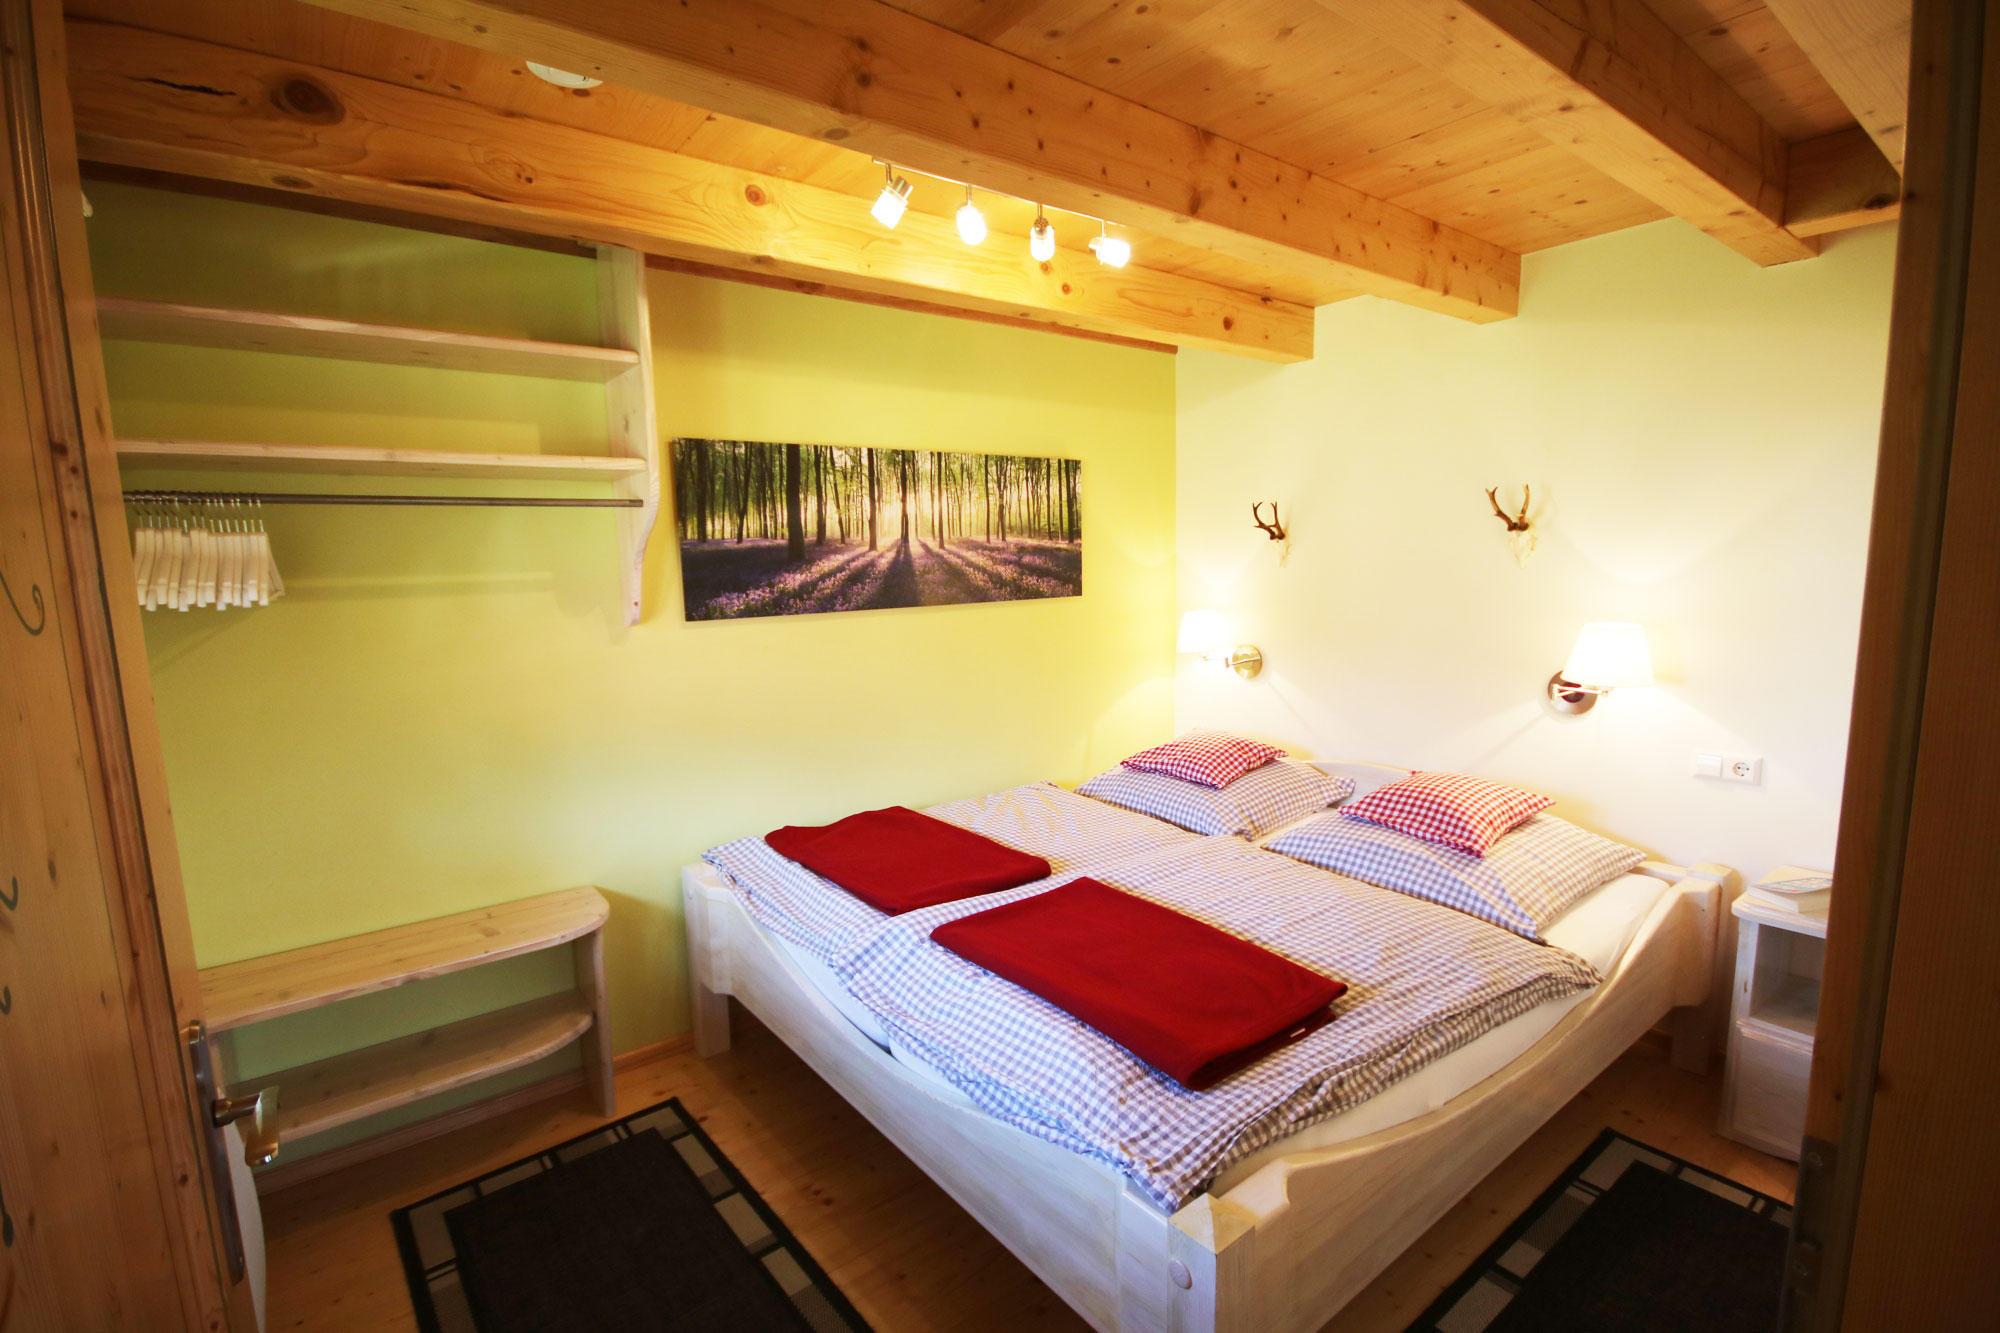 Schlafzimmer unserer Schwarzwald-Lodge - eine Oase der Entspannung